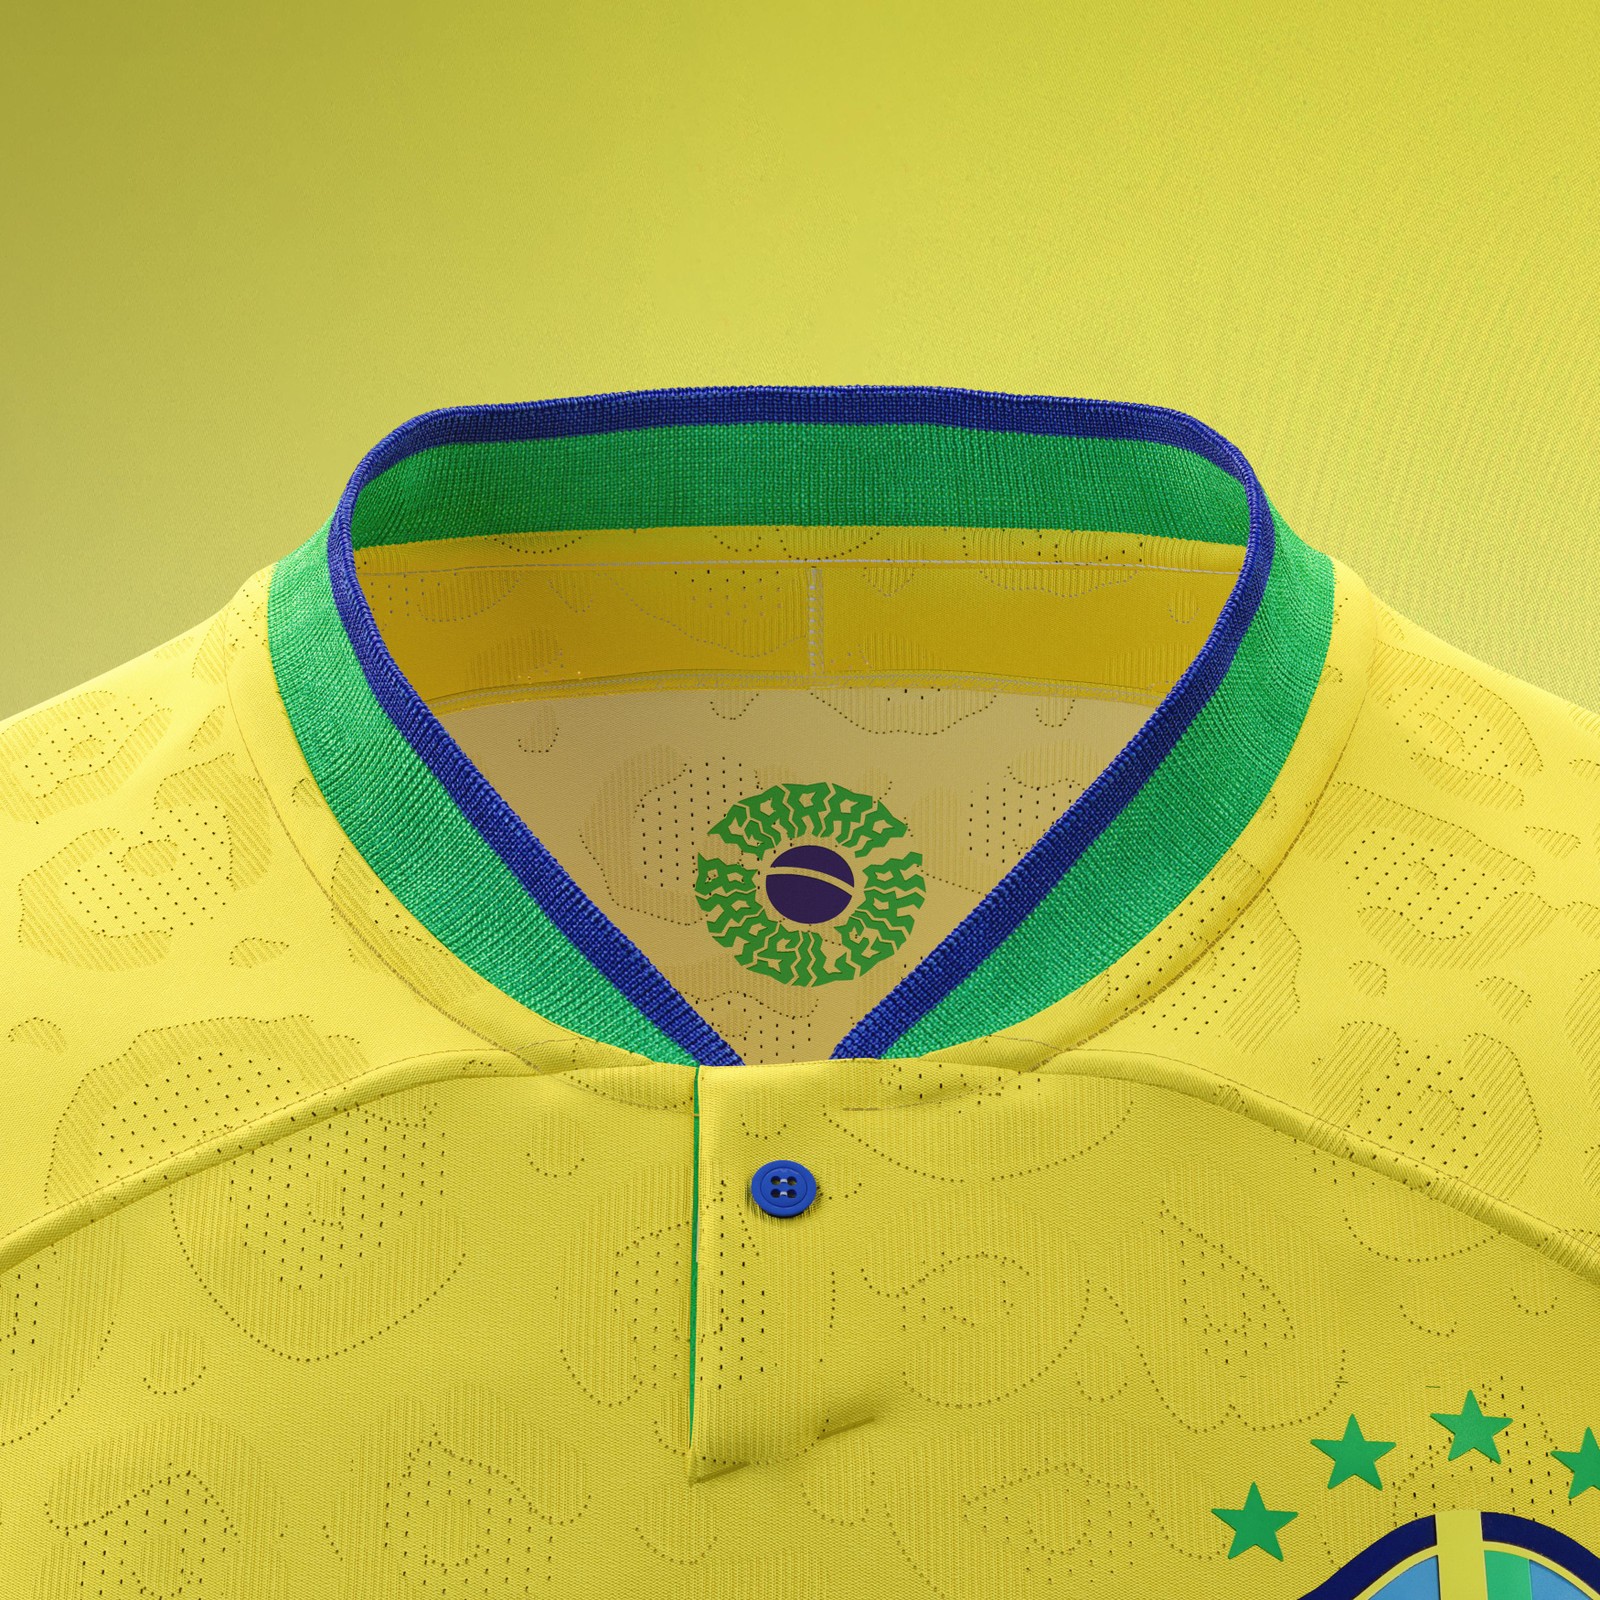 Detalhe da gola da camisa da seleção brasileira. Foto: Divulgação Nike